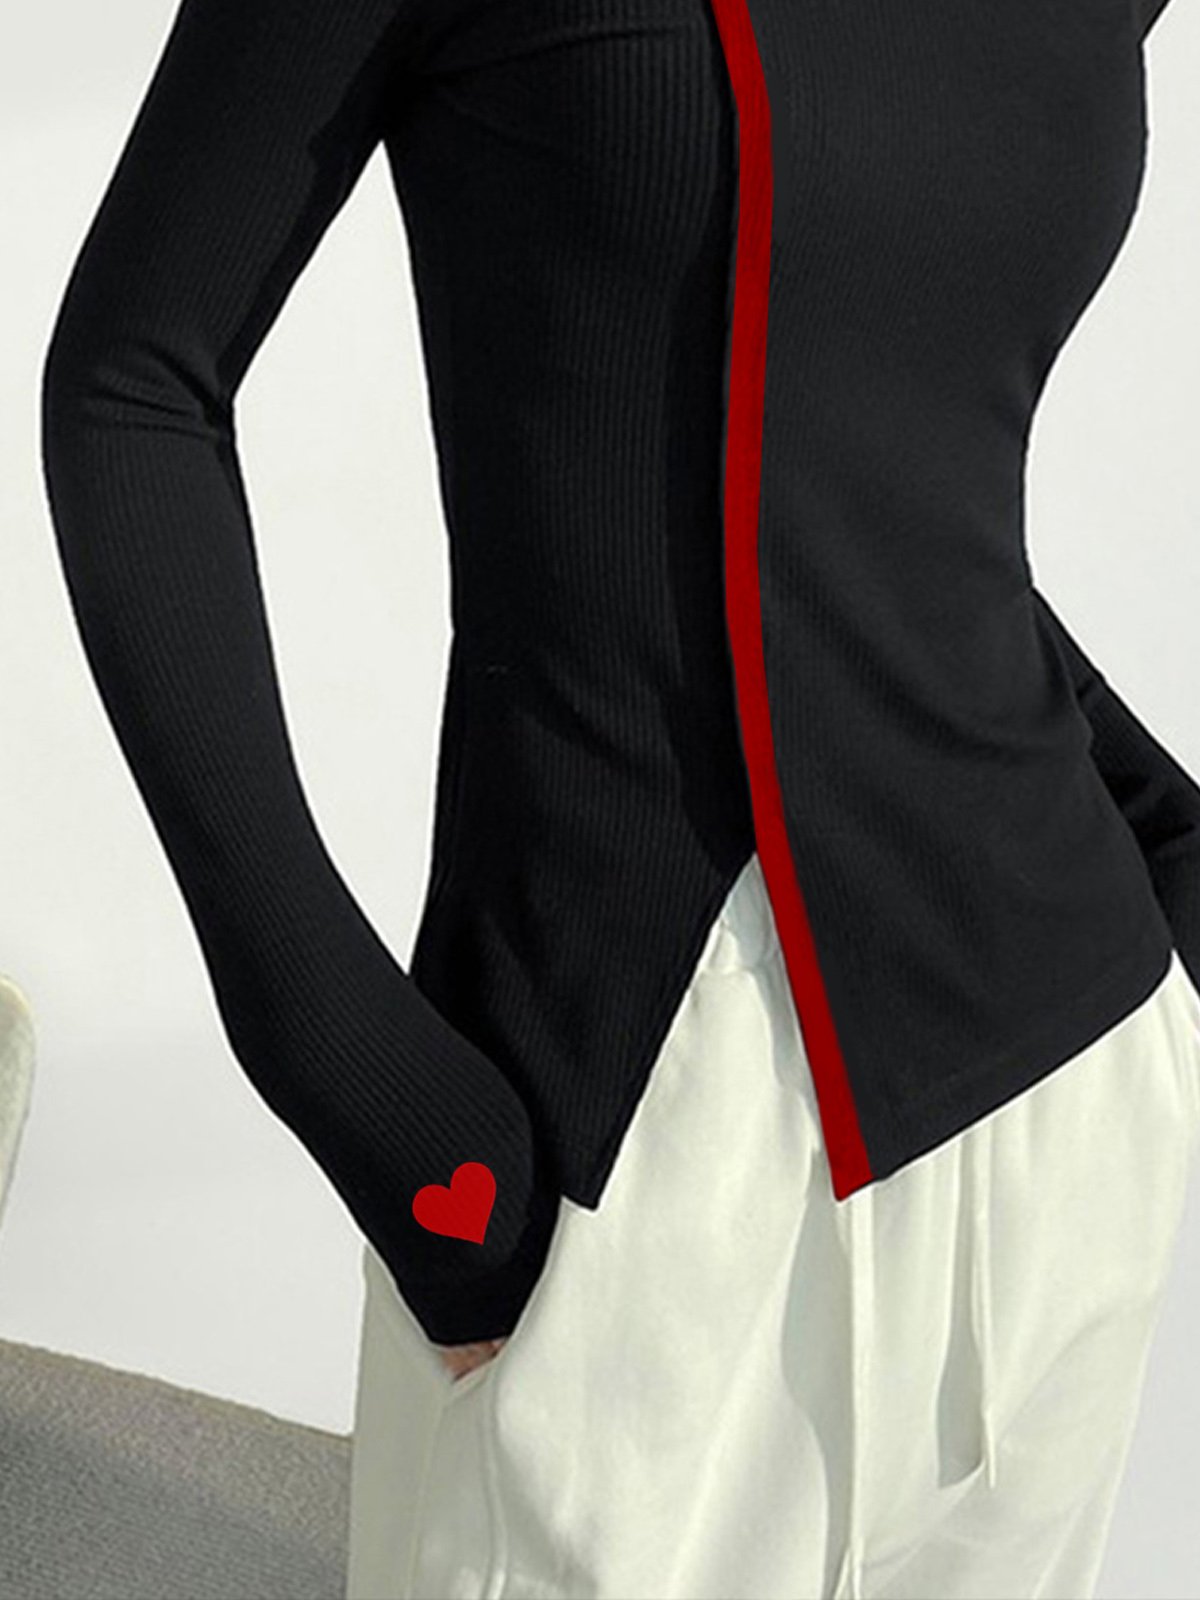 Urban Einfach Shirt Strickmode Schwarz Stehkragen mit rotem Herz